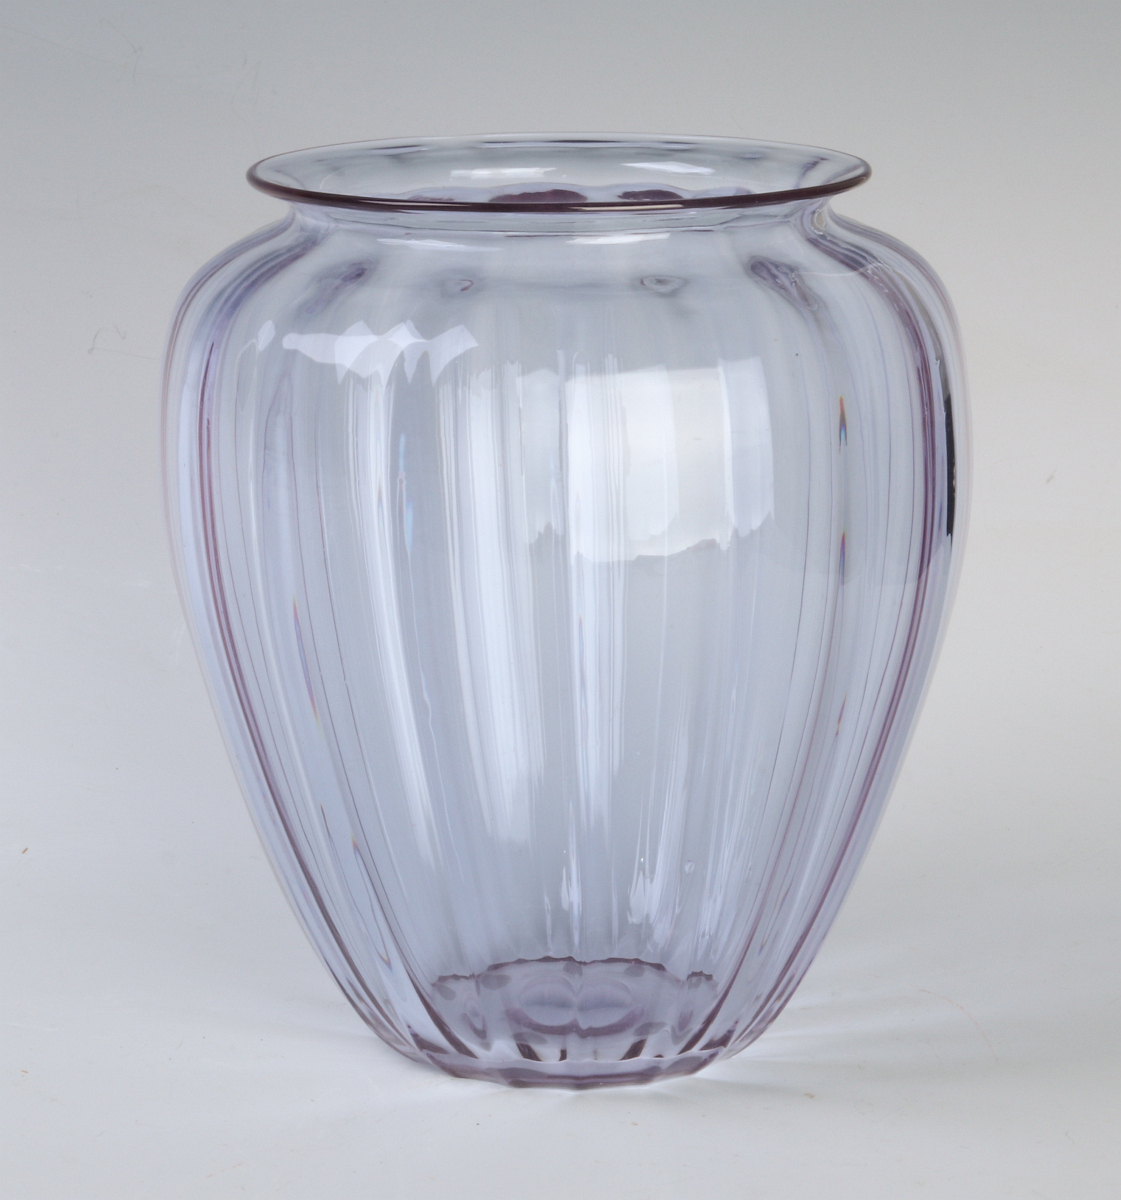 A STEUBEN ART GLASS VASE IN RARE COLOR 'WISTERIA'